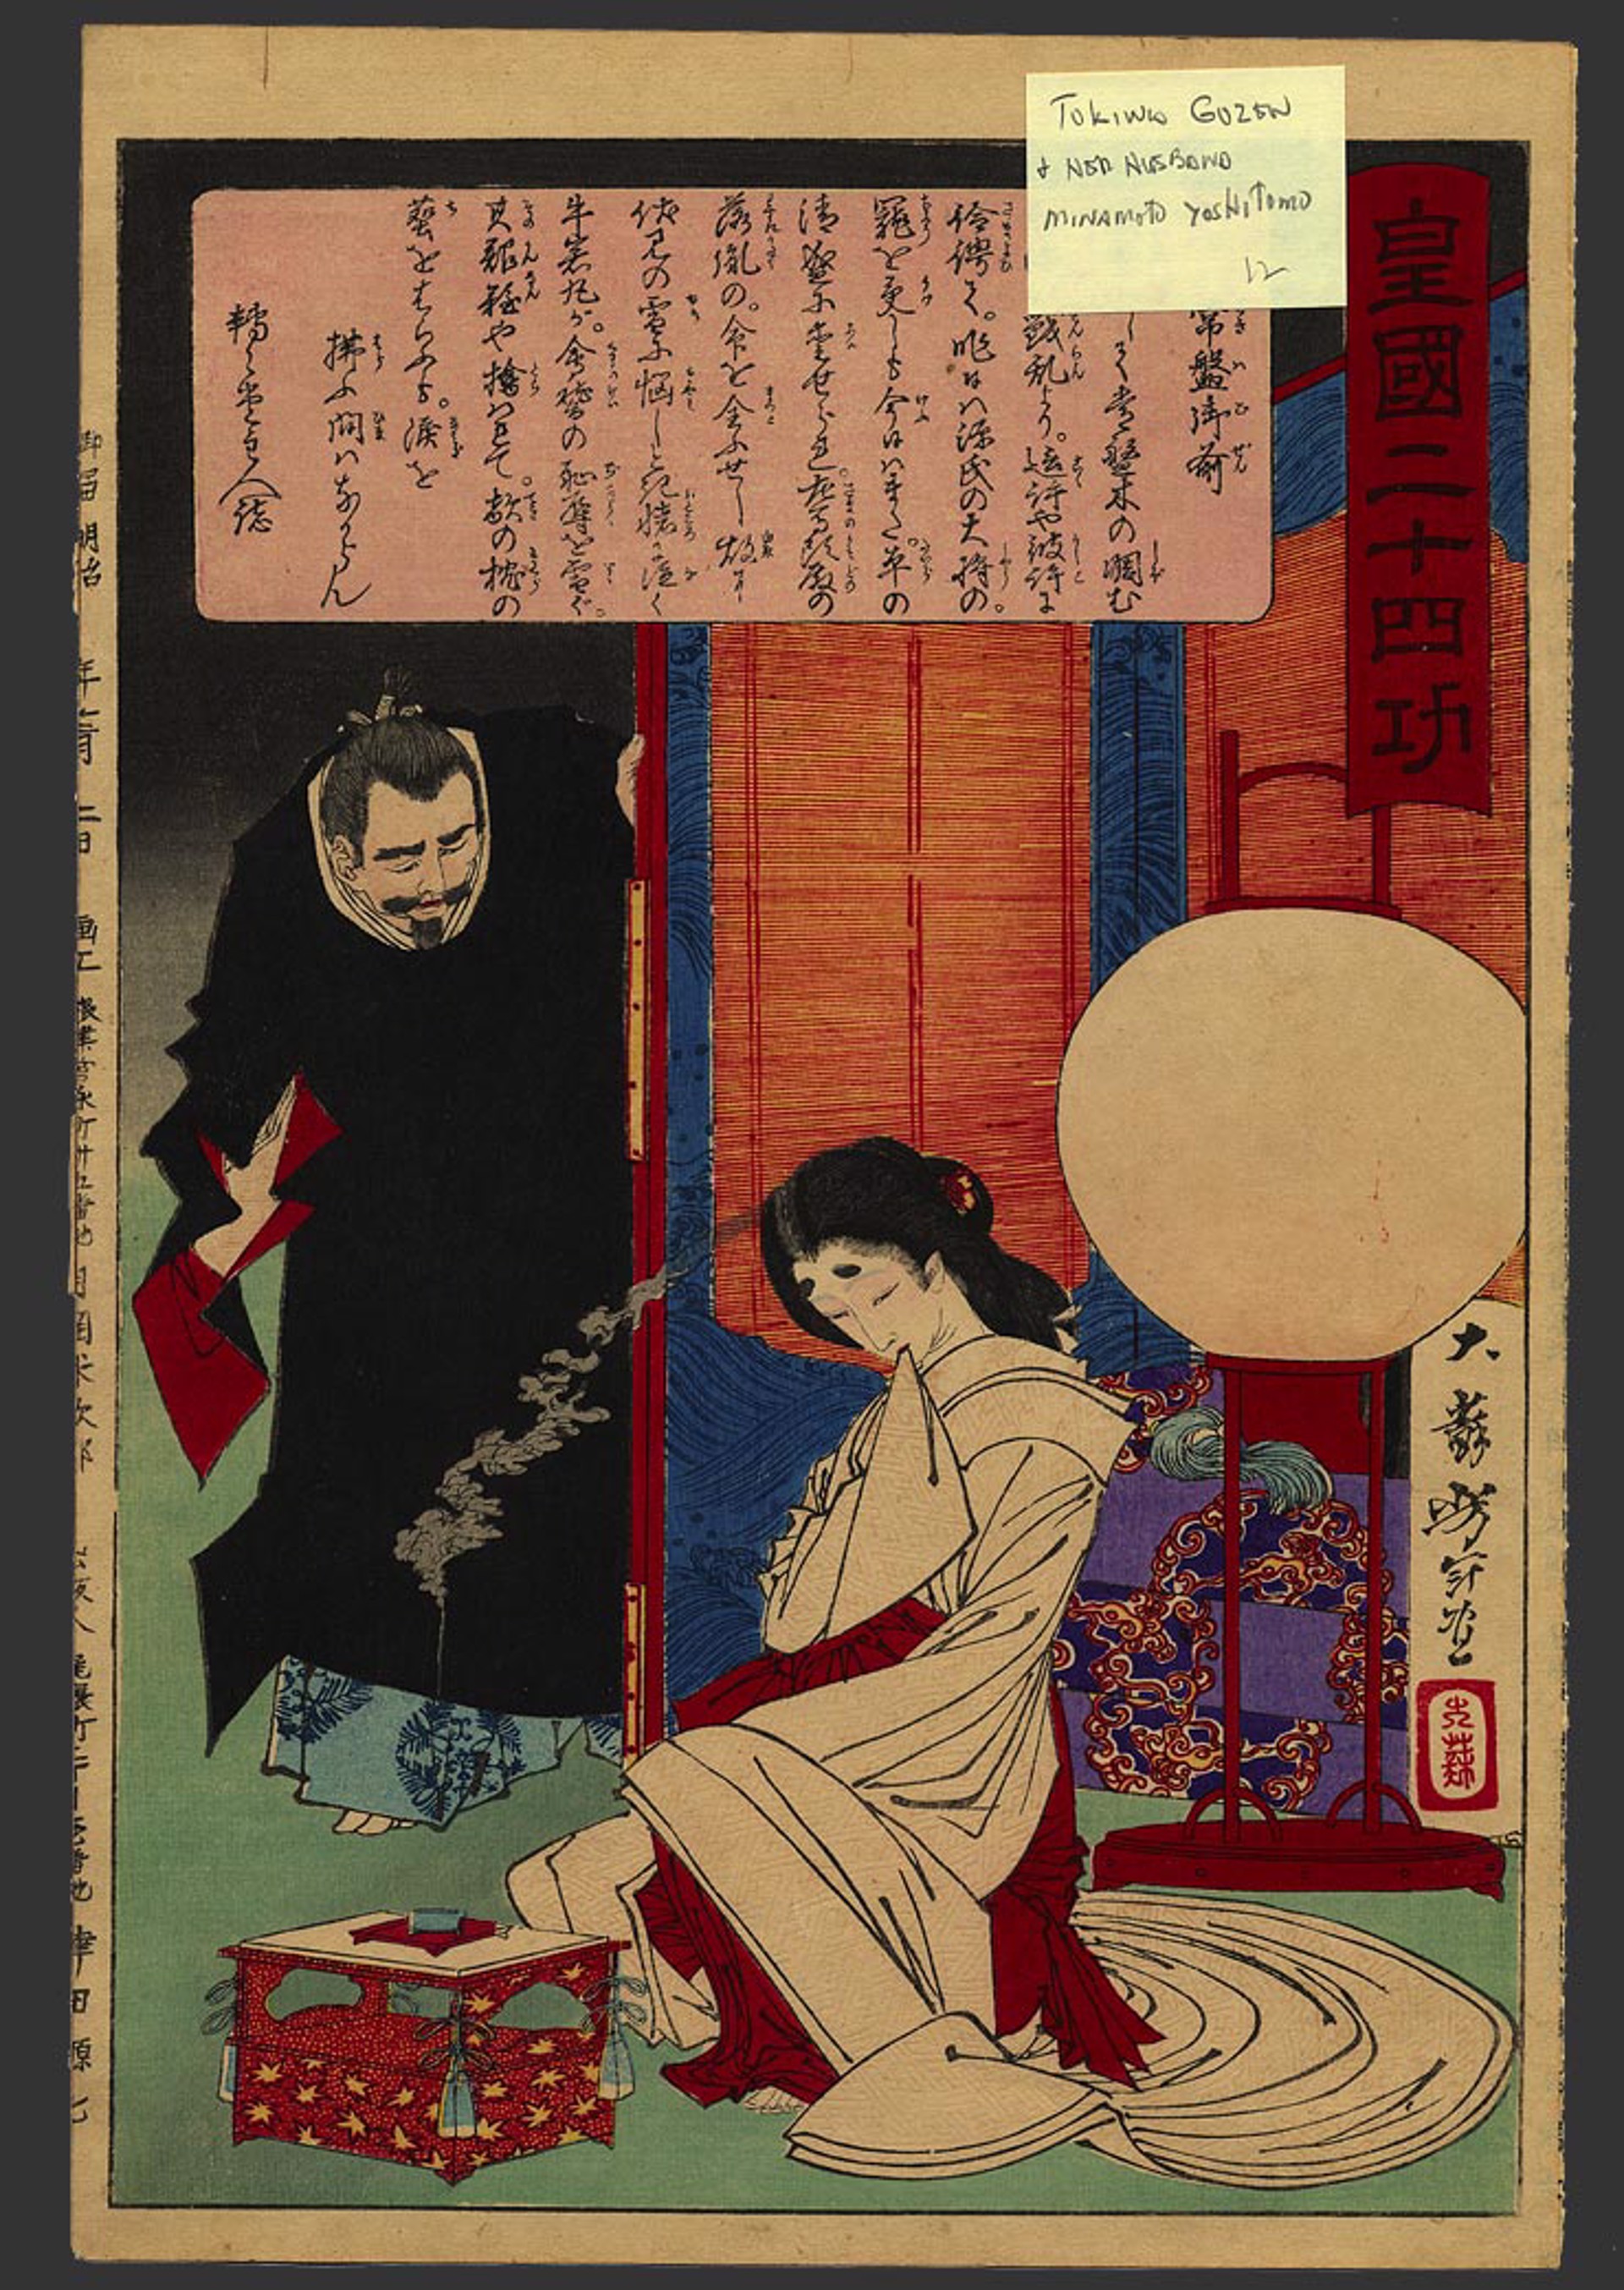 #12 Tokiwa Gozen and her husband Minamoto no Yoshitomo (1123-60) 24 Accomplishments in Imperial Japan by Yoshitoshi